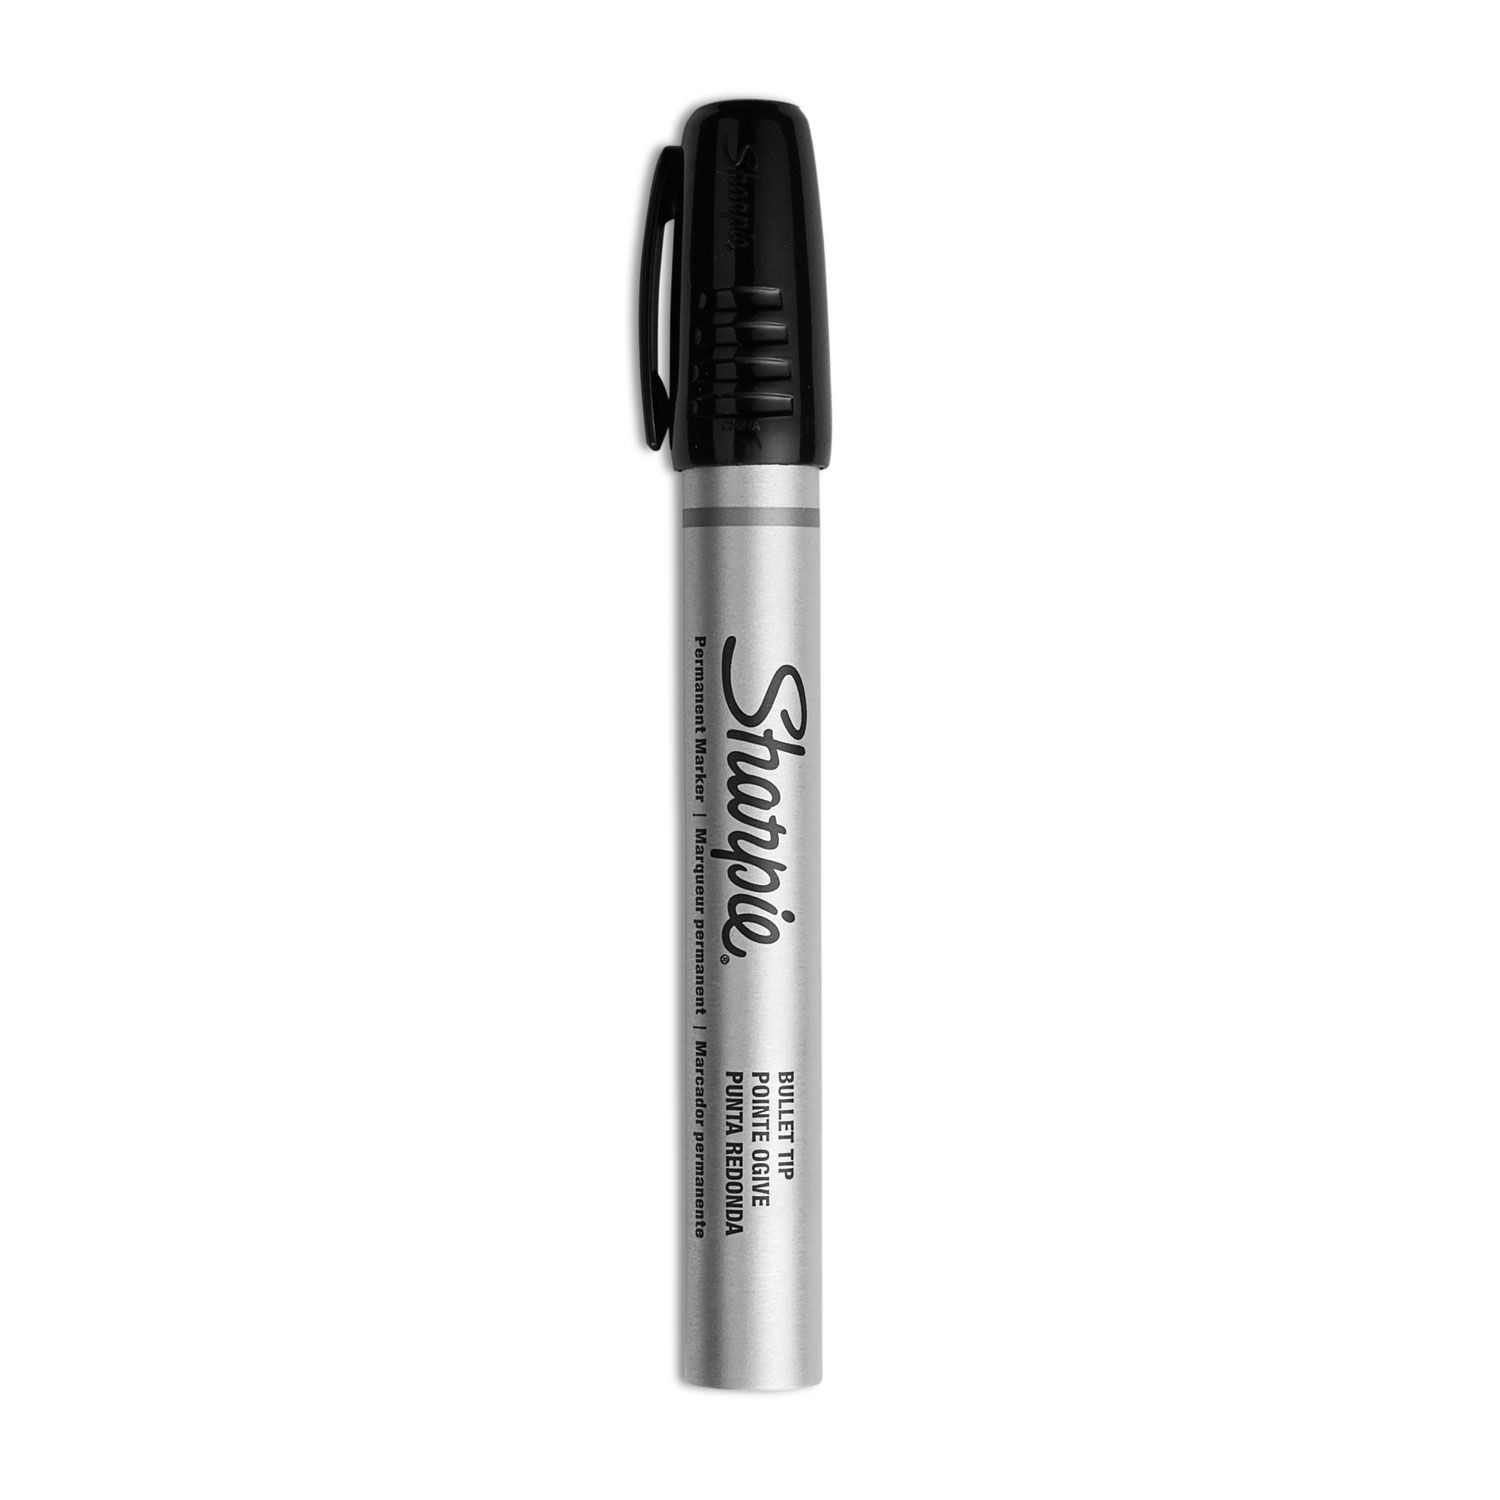 Sharpie S-Gel S-Gel High-Performance Gel Pen, Retractable, Medium 0.7 mm,  Black Ink, Black Barrel, Dozen